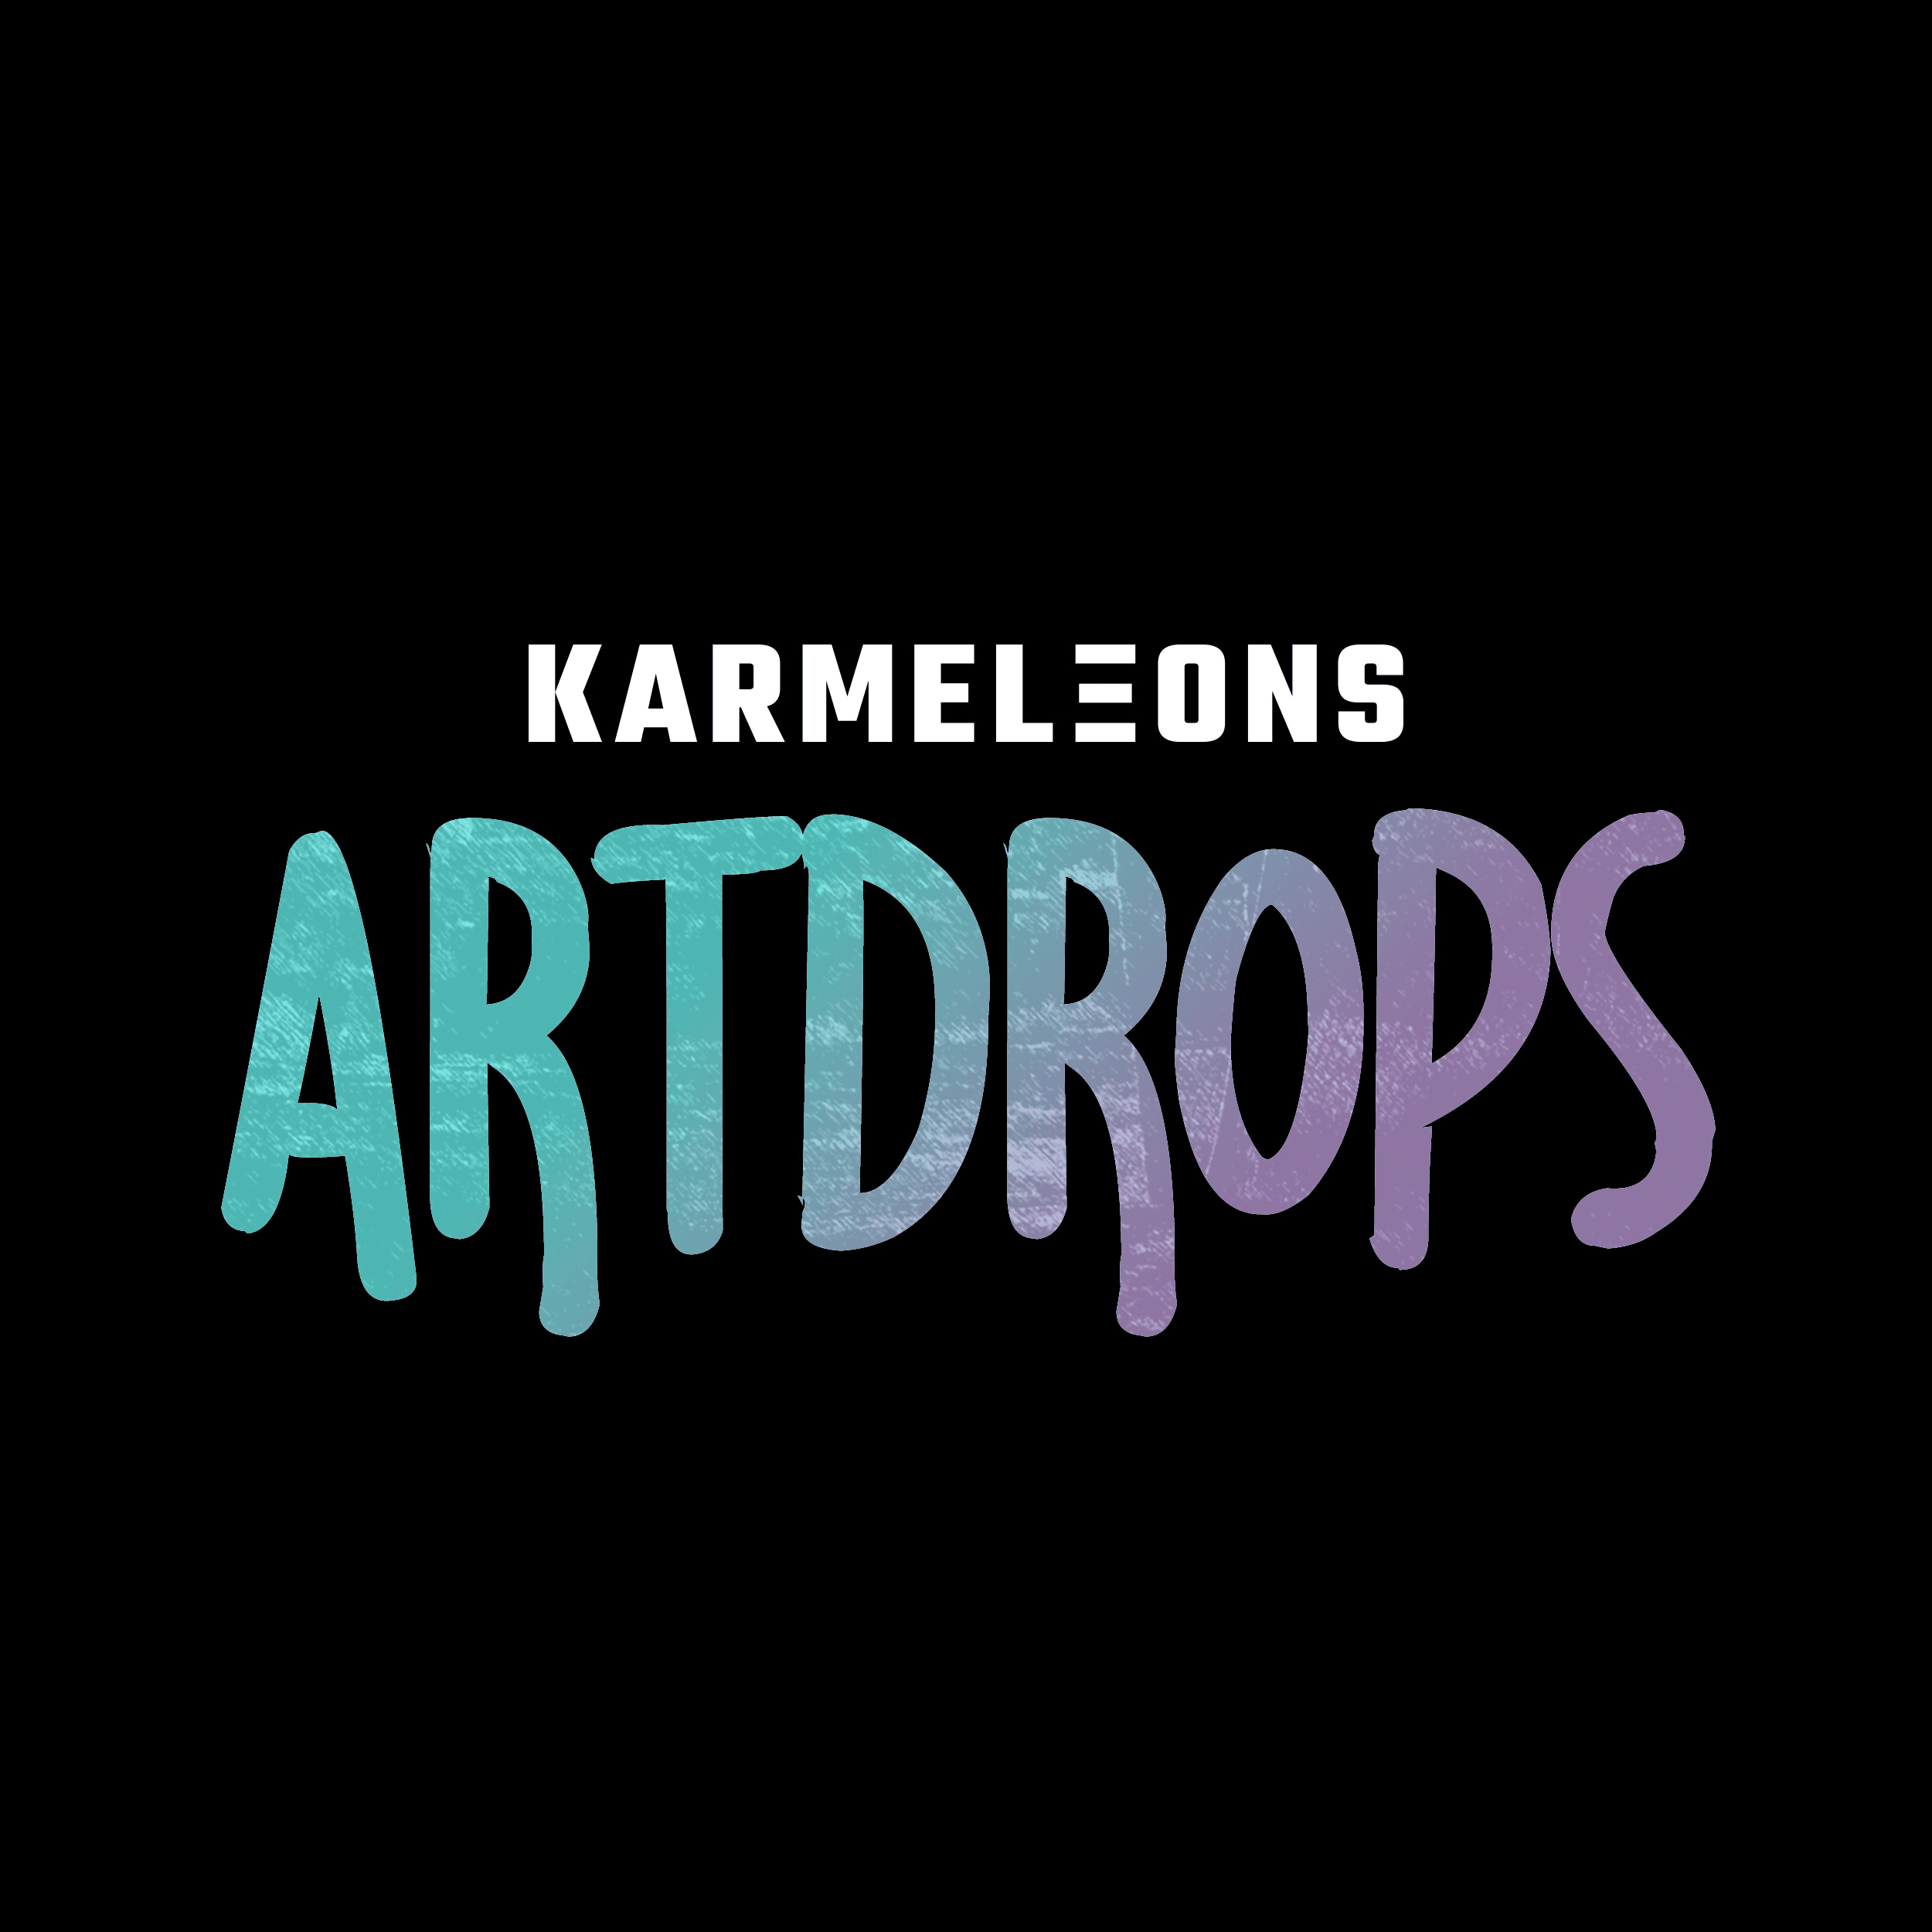 Karmeleons_Artdrops